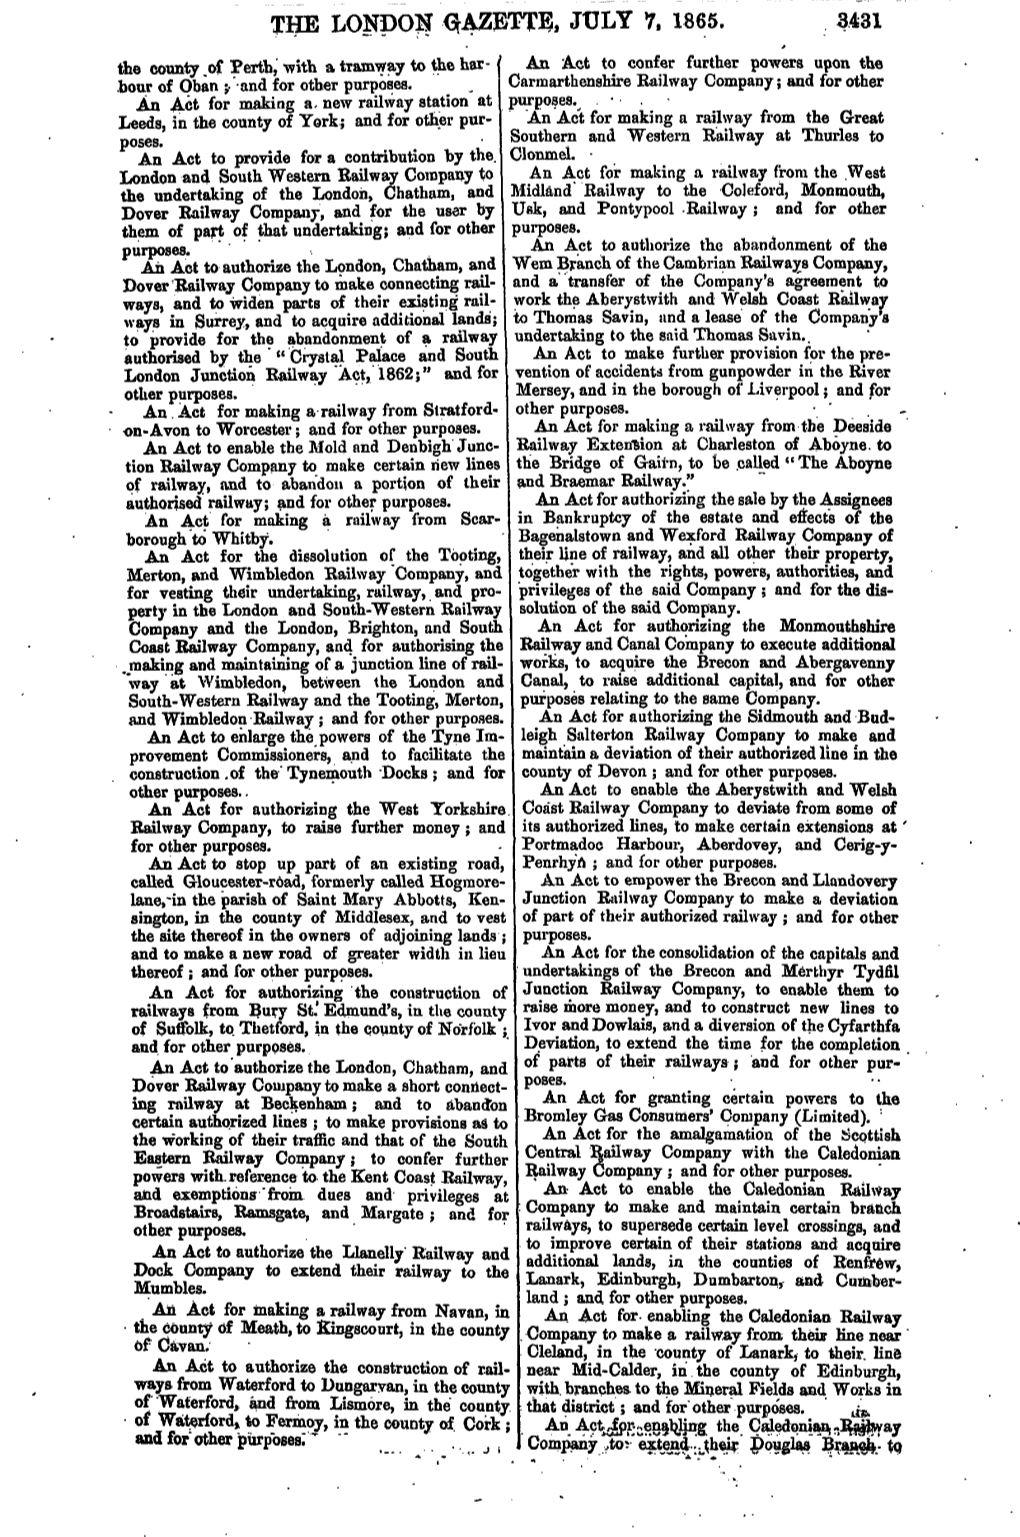 The London Gazette, July 7, 1865. 3431